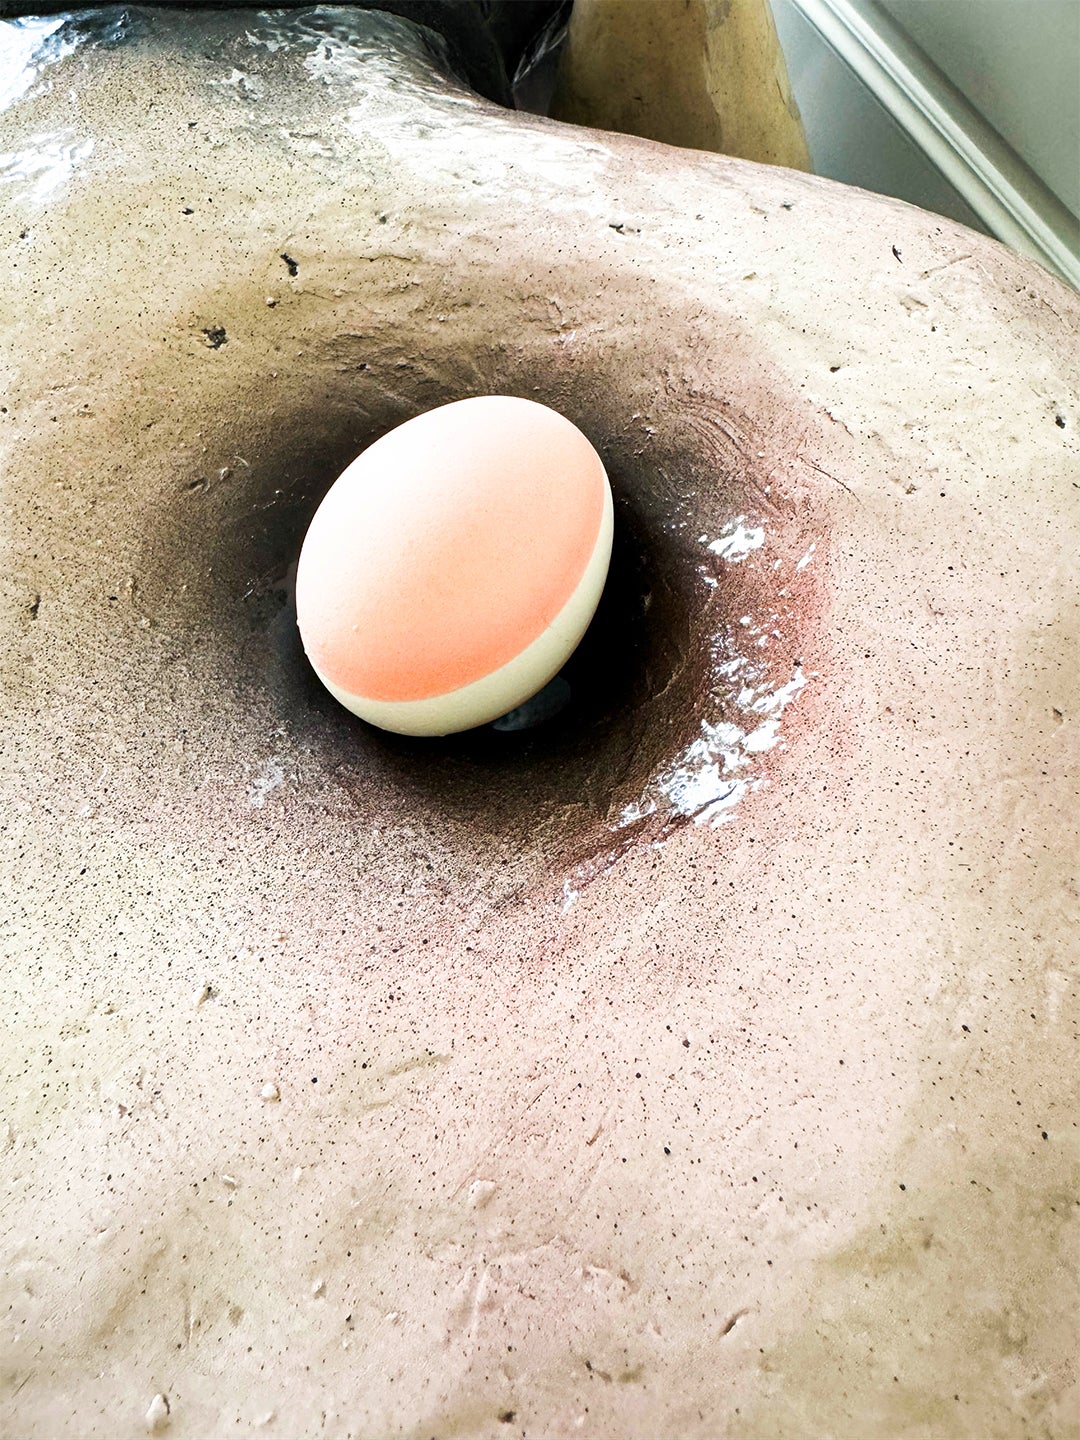 Easter egg hidden in a divot of a bench